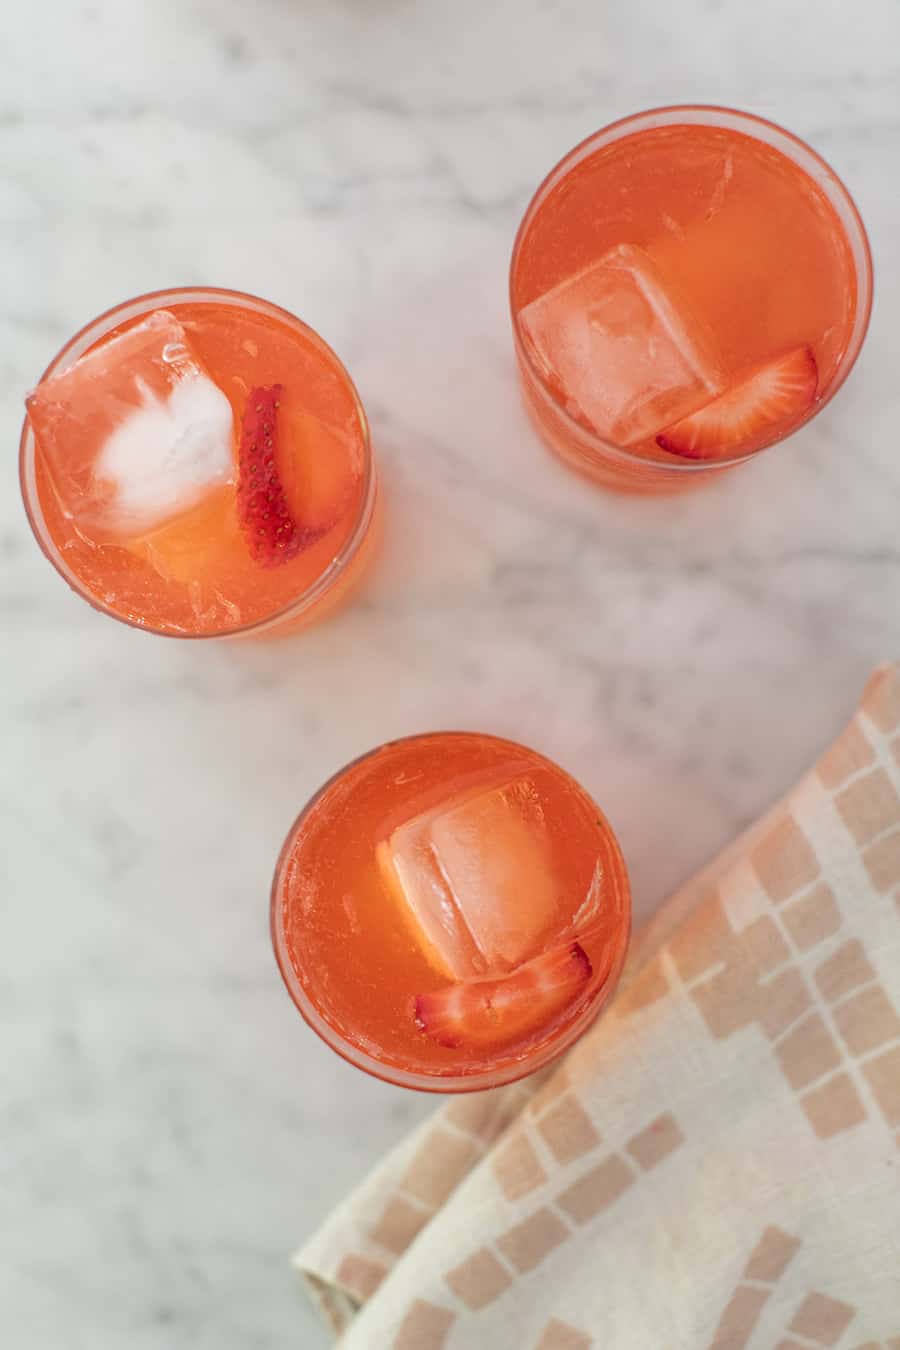 Strawberry lemonade in glasses.